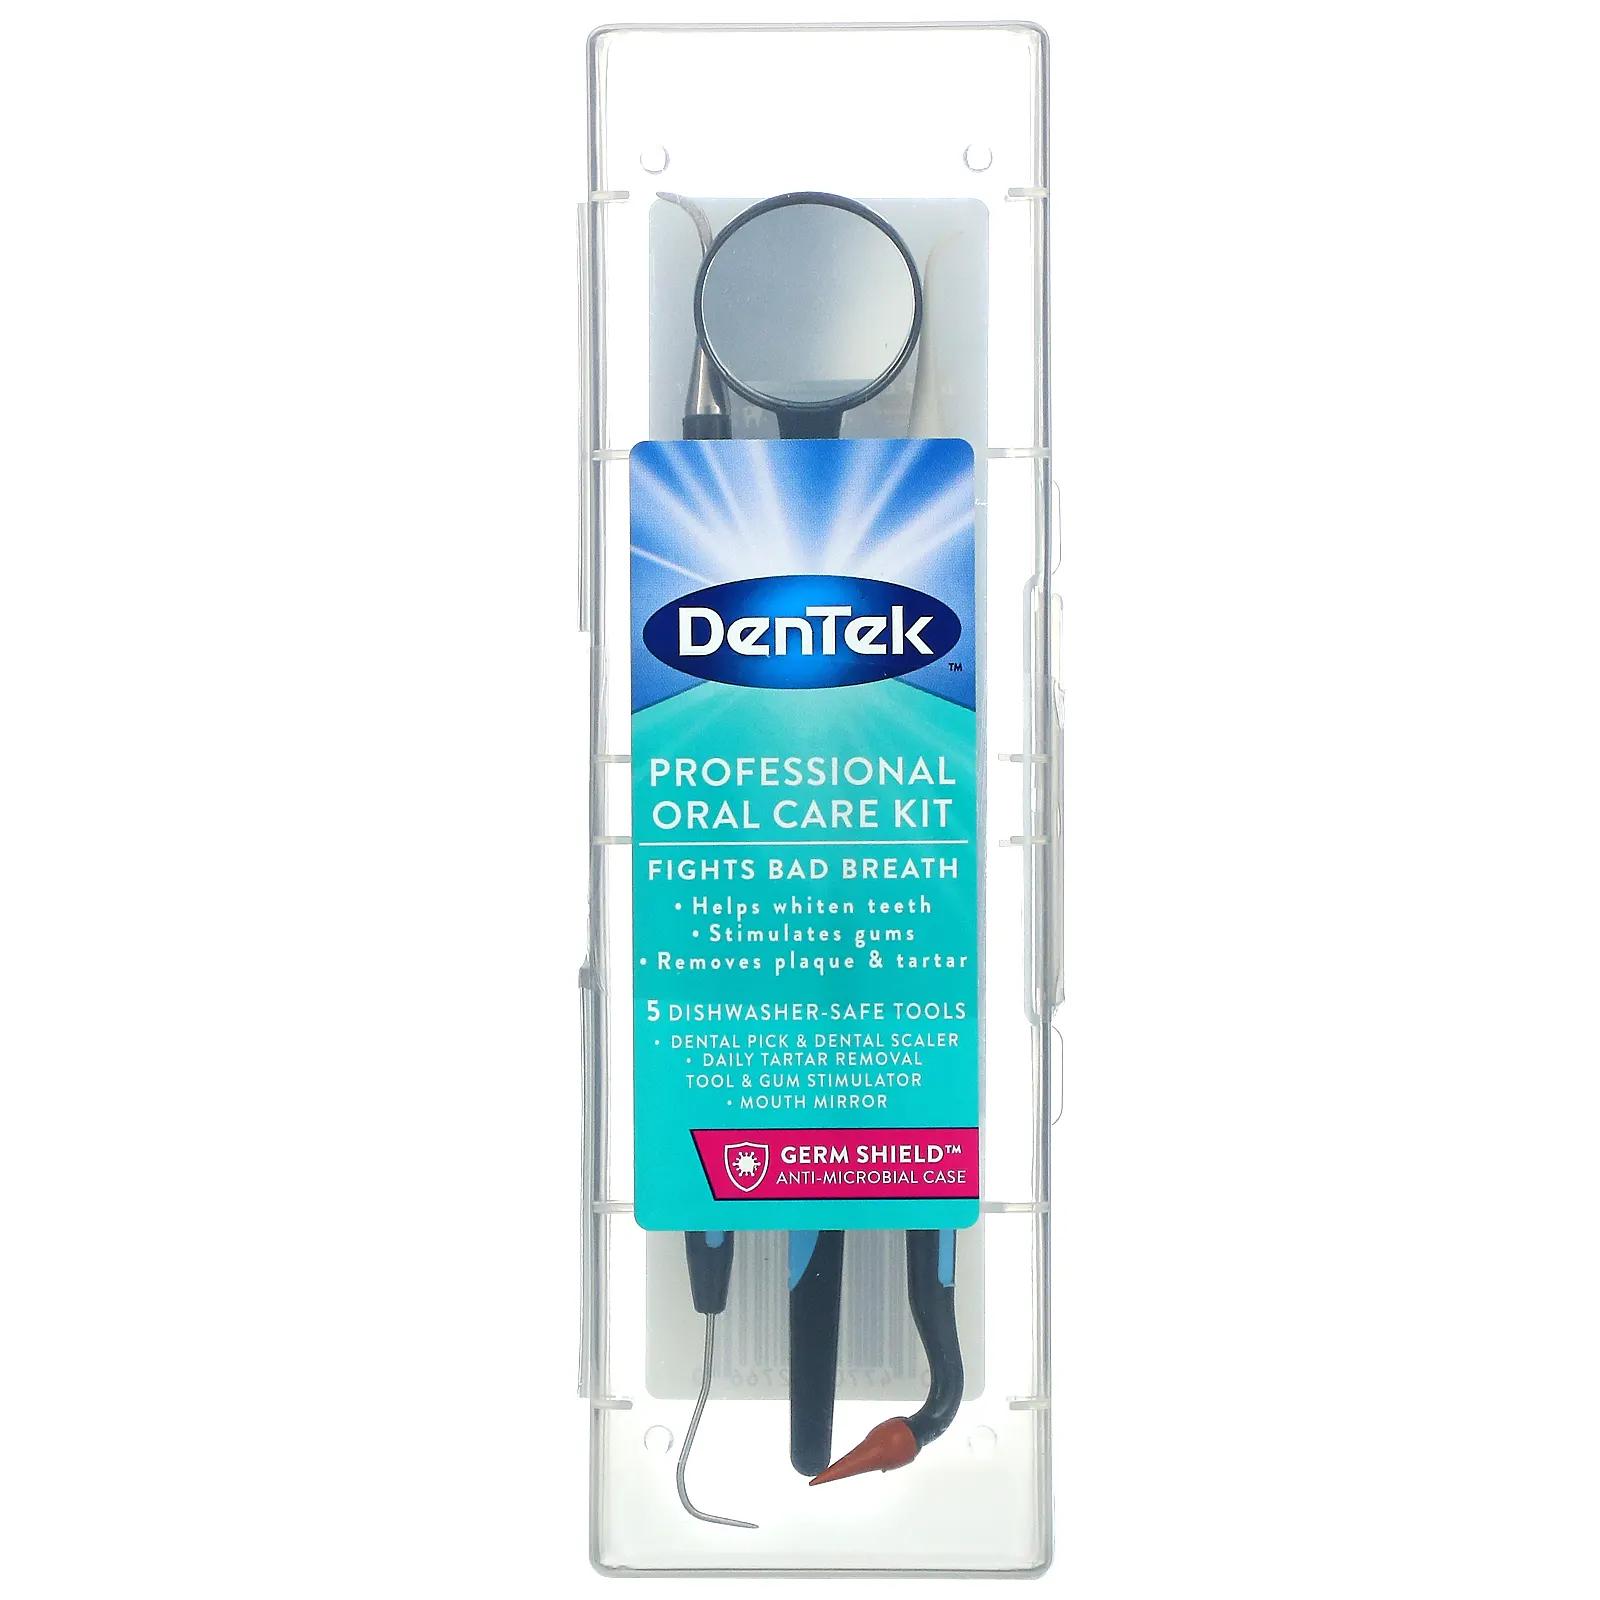 DenTek Профессиональный набор для ухода за полостью рта 1 комплект dentek мгновенное обезболивание максимальная сила чистая мята 1 набор